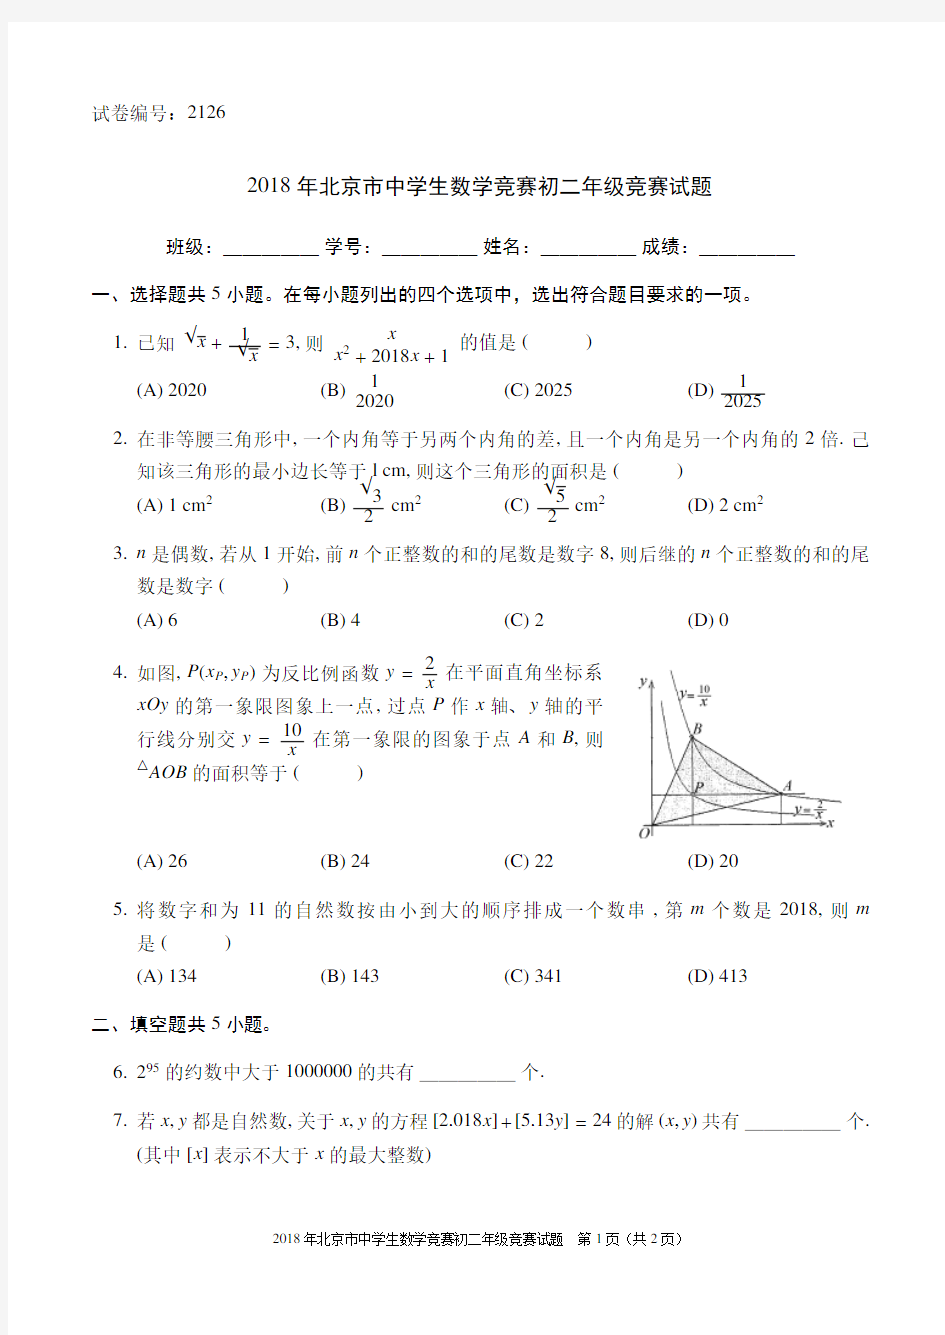 2018年北京市中学生数学竞赛初二年级竞赛试题